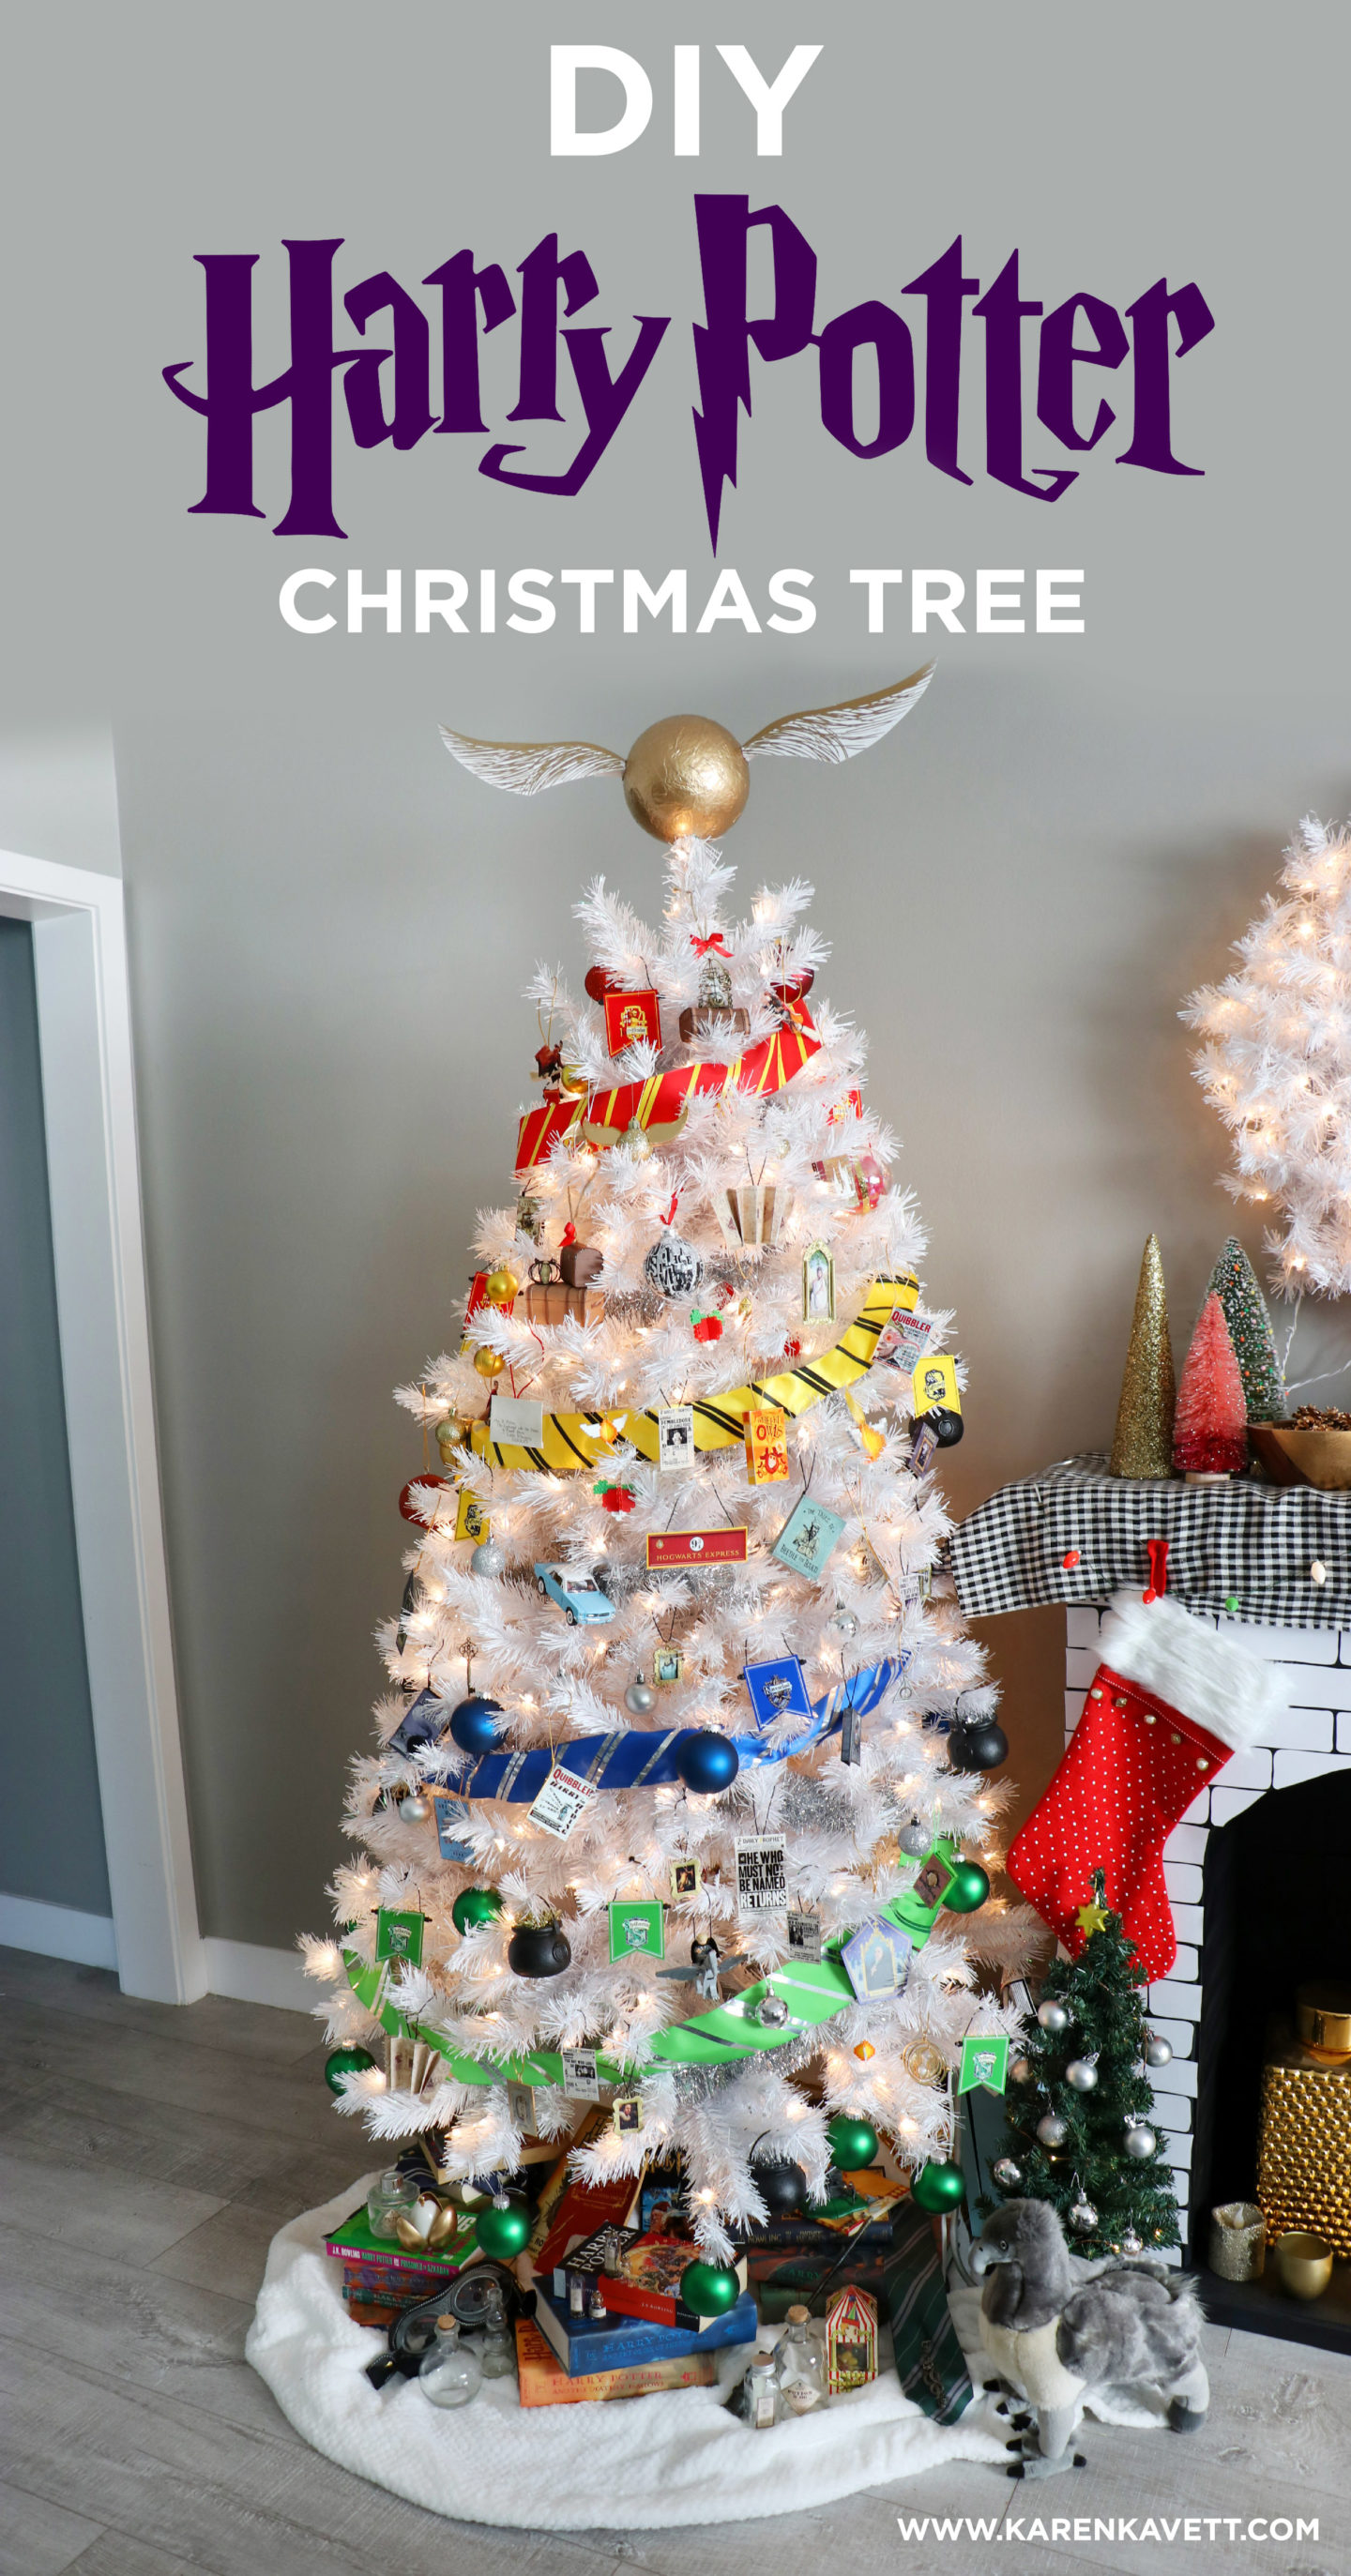 DIY Harry Potter Christmas Tree - Karen Kavett